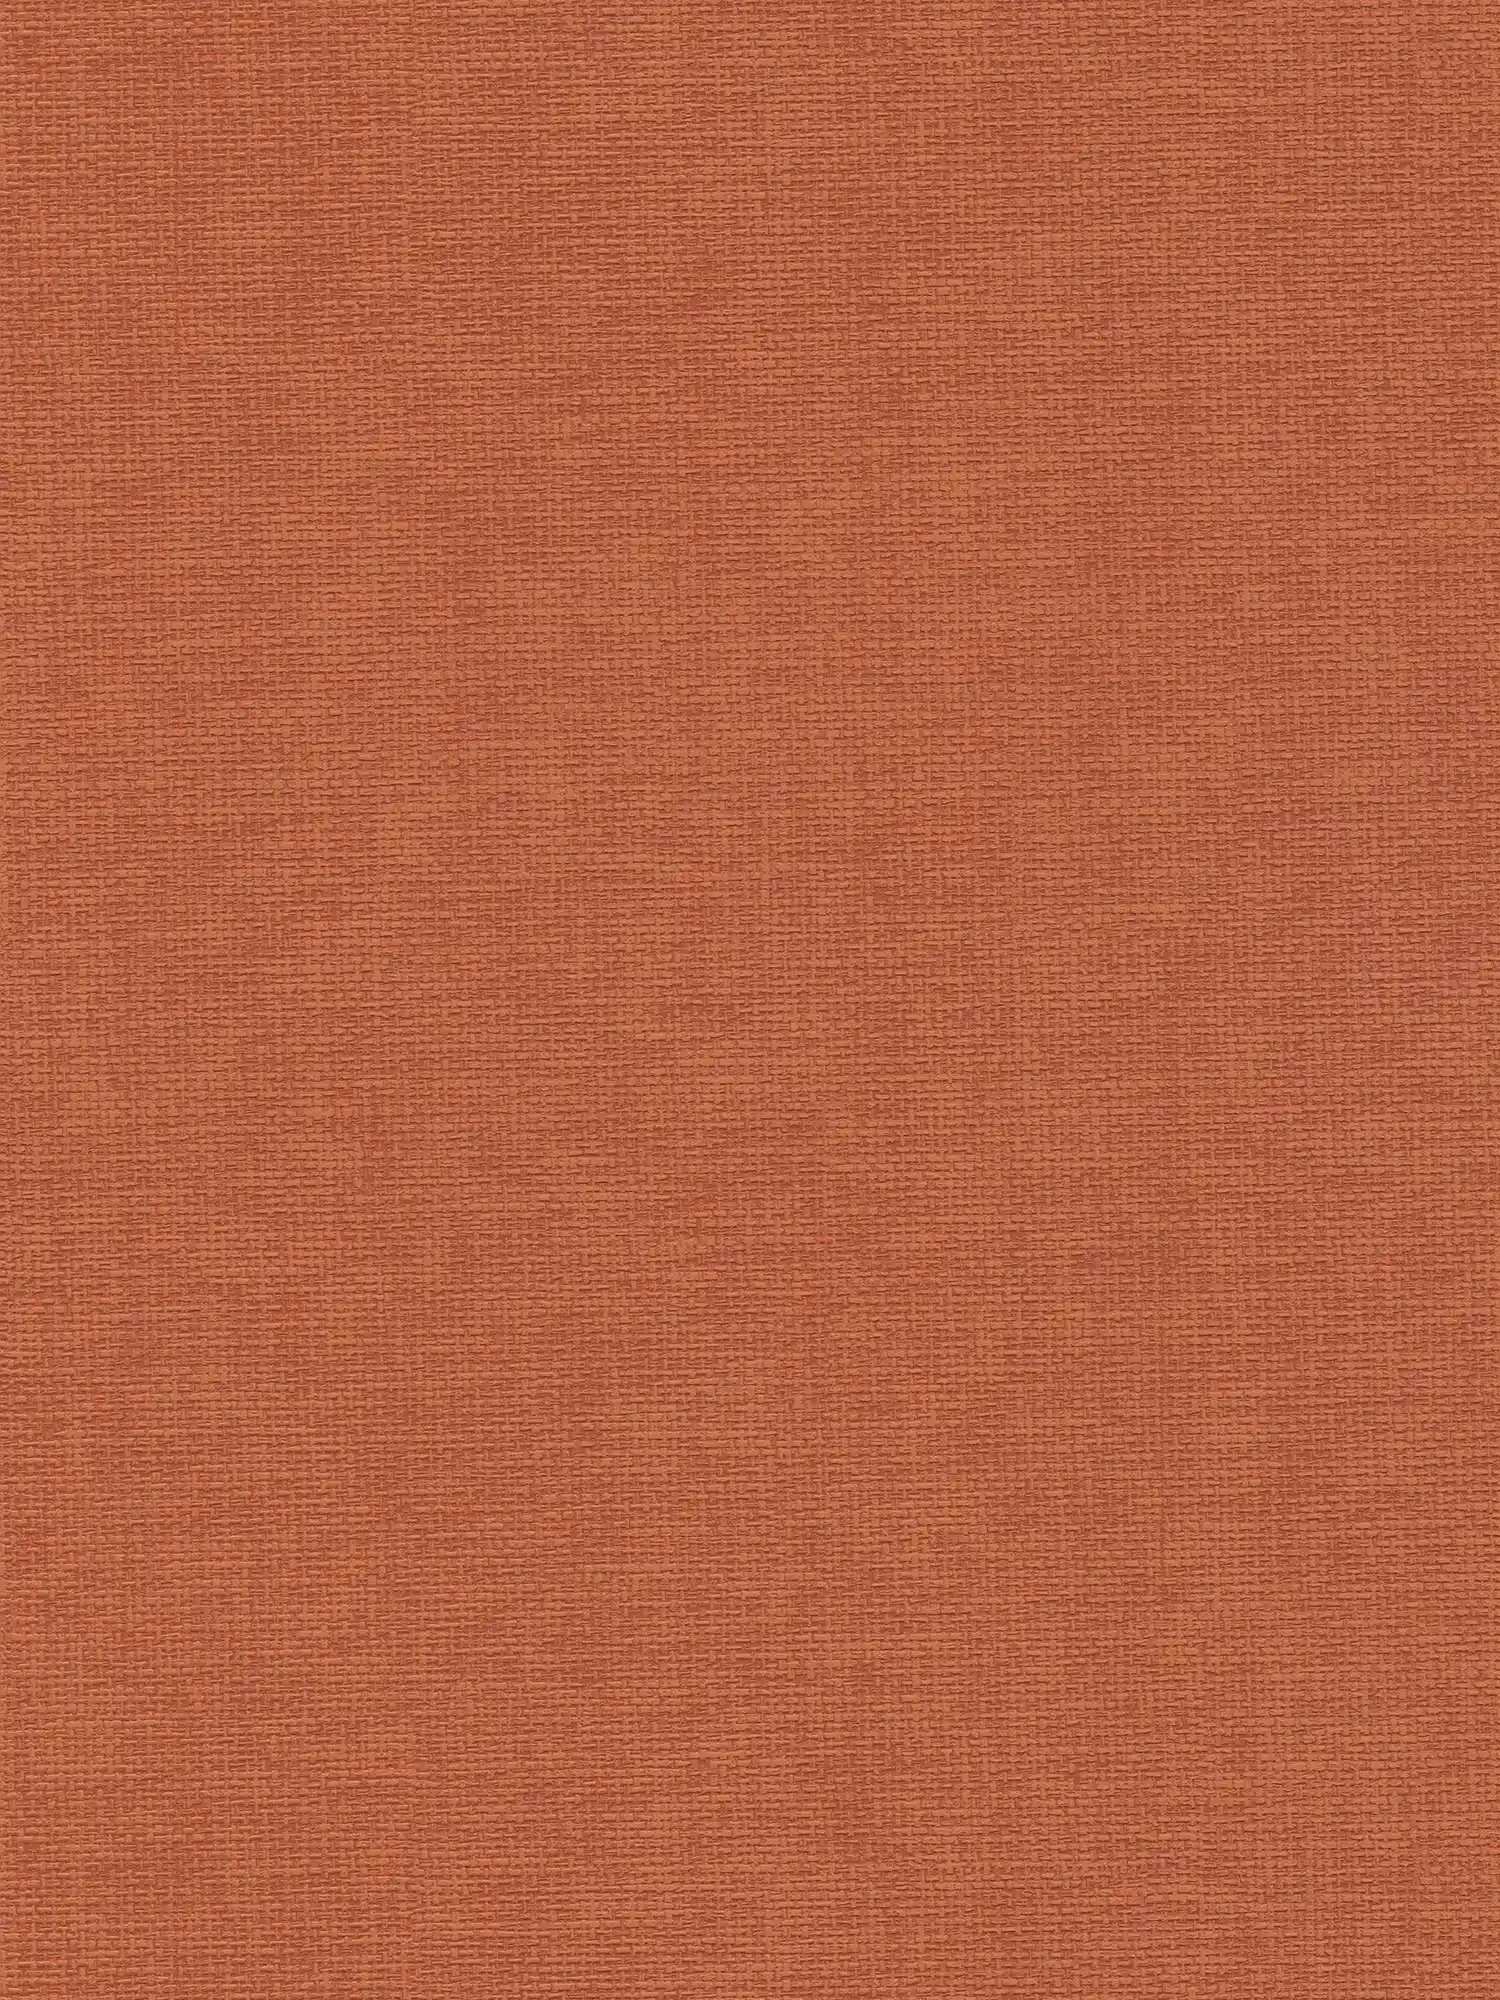 Oranje-rood behang met textielstructuur - rood
